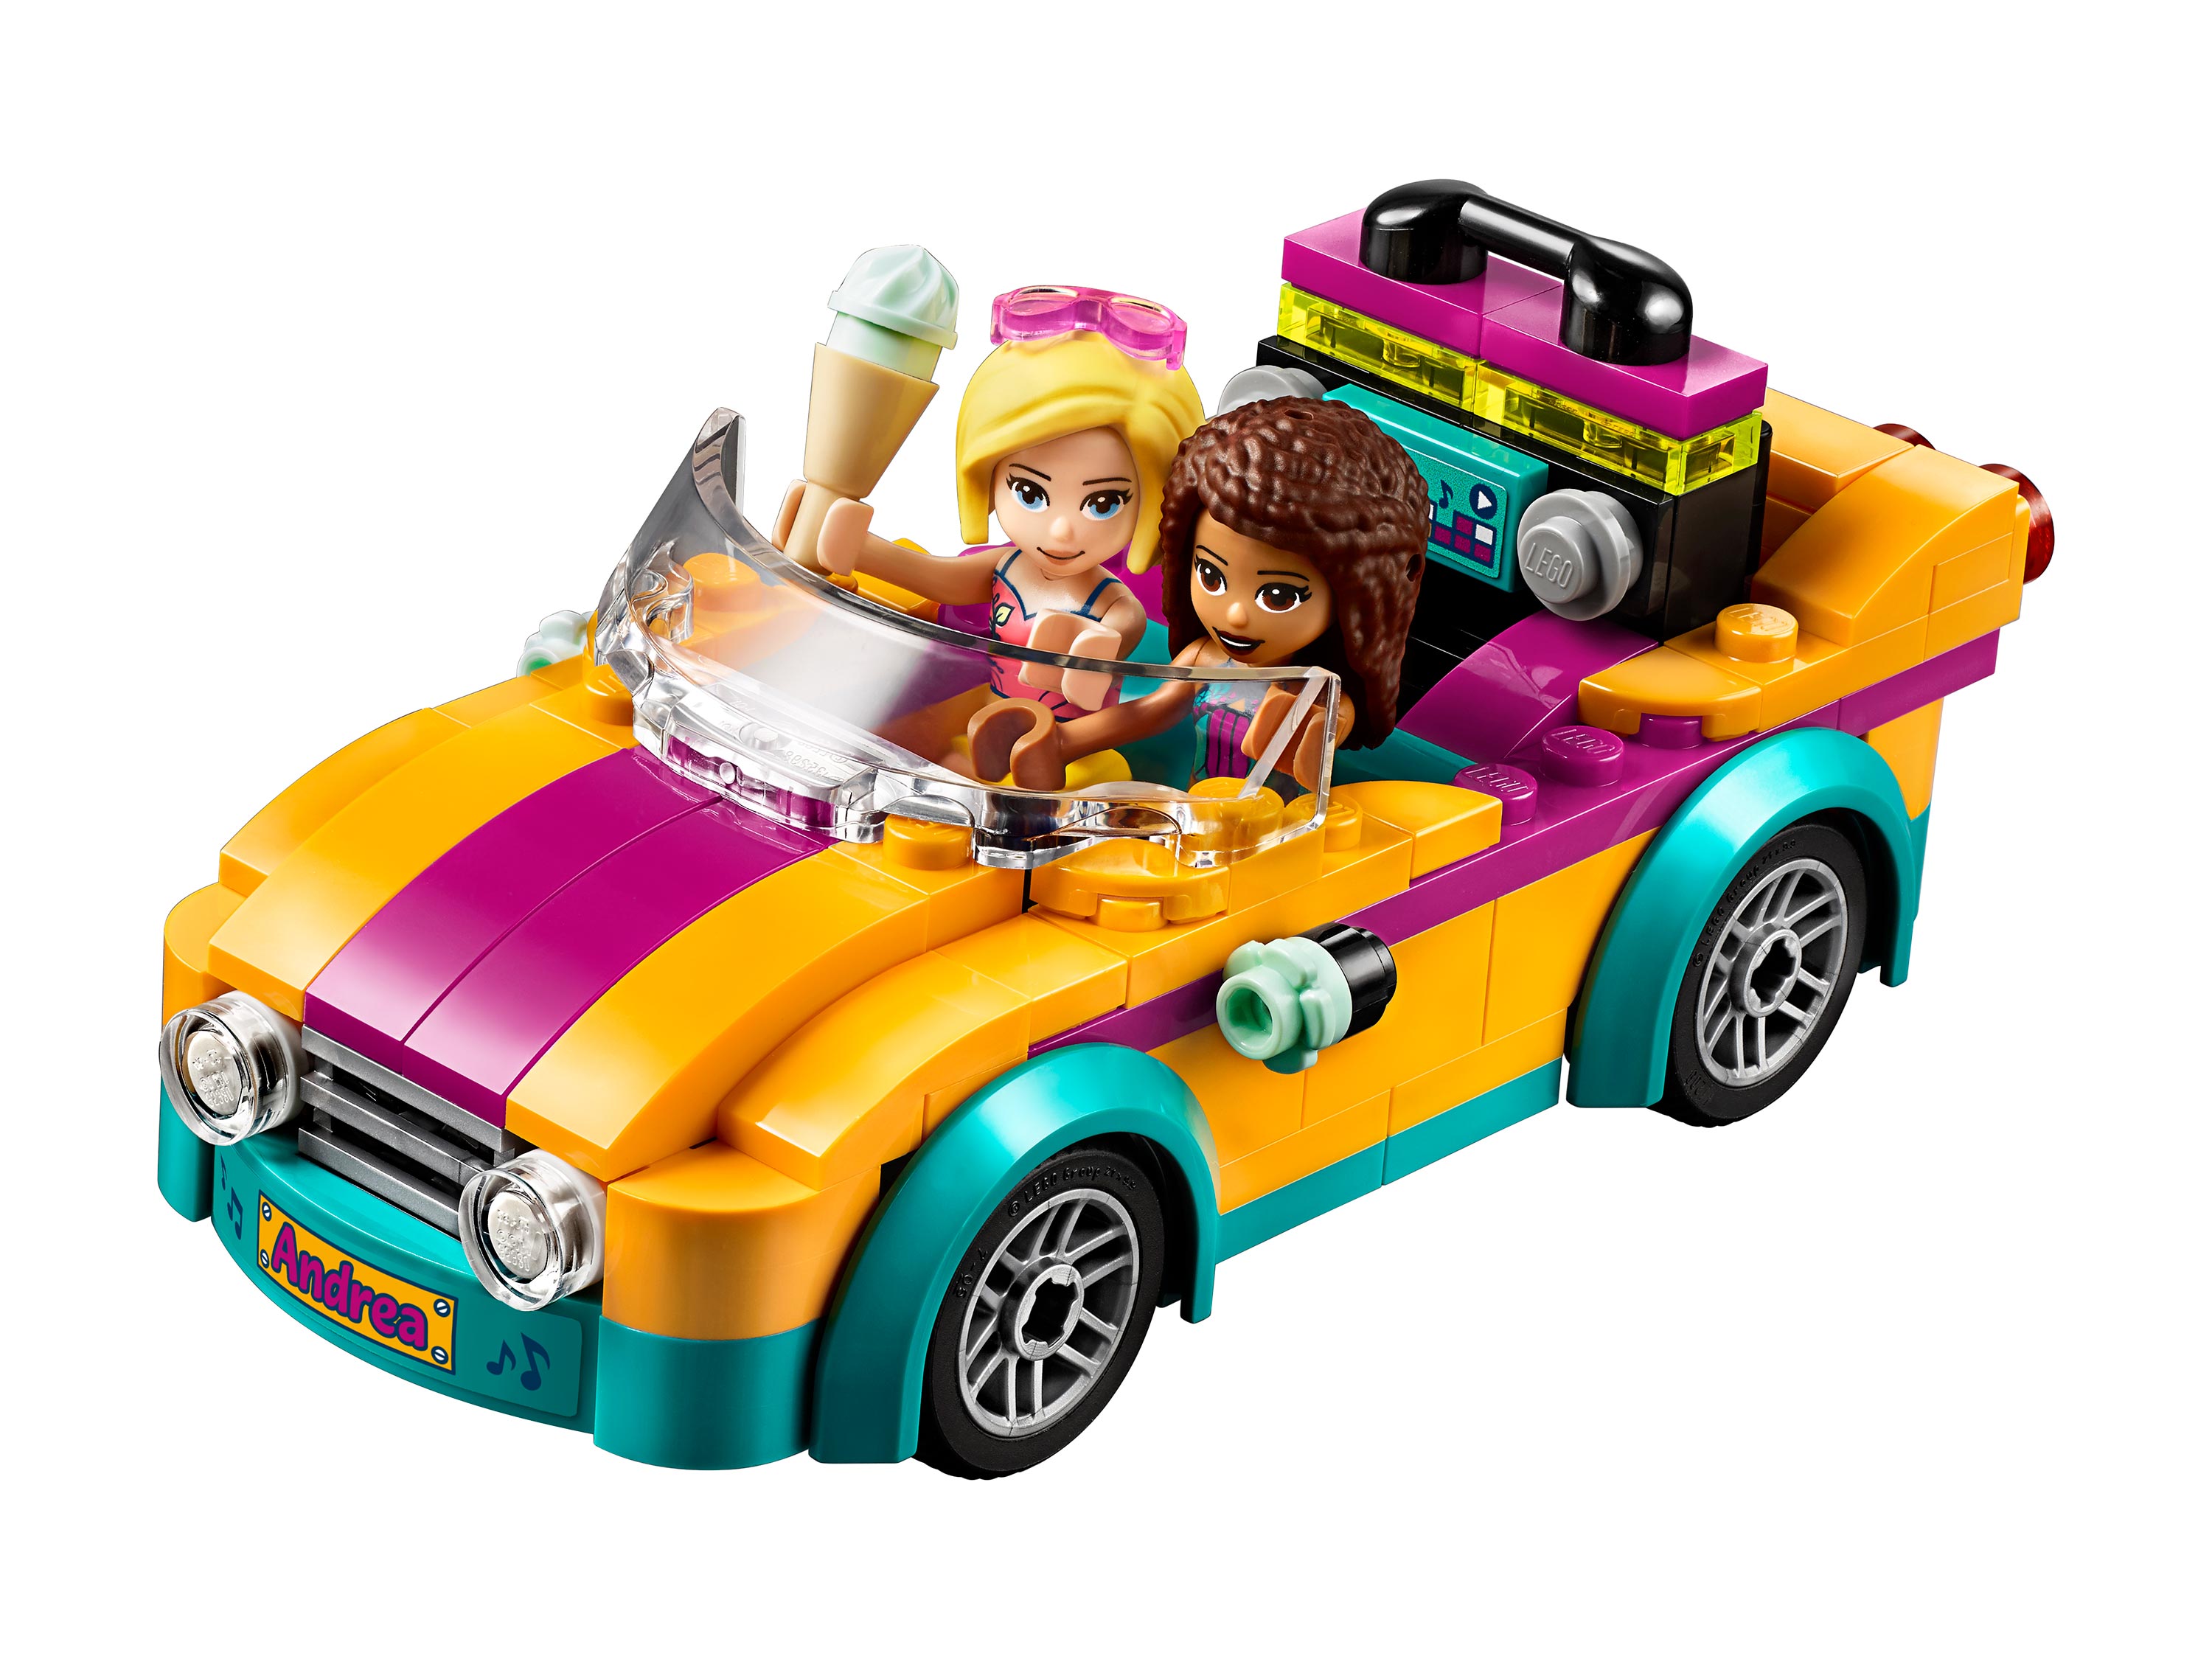 Lego Friends 41390 Машина со сценой Андреа